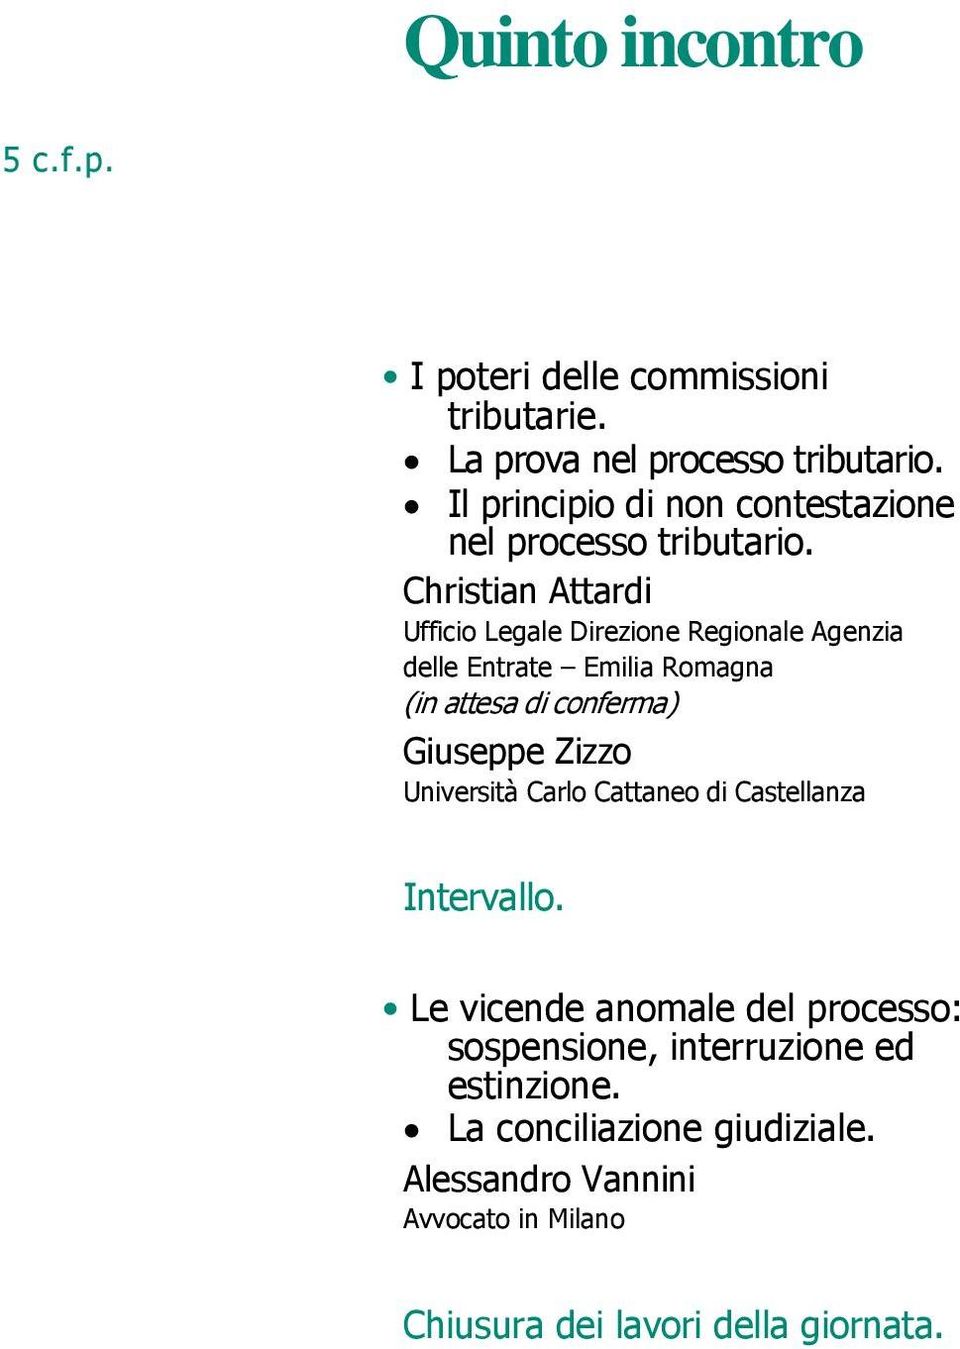 Christian Attardi Ufficio Legale Direzione Regionale Agenzia delle Entrate Emilia Romagna (in attesa di conferma)